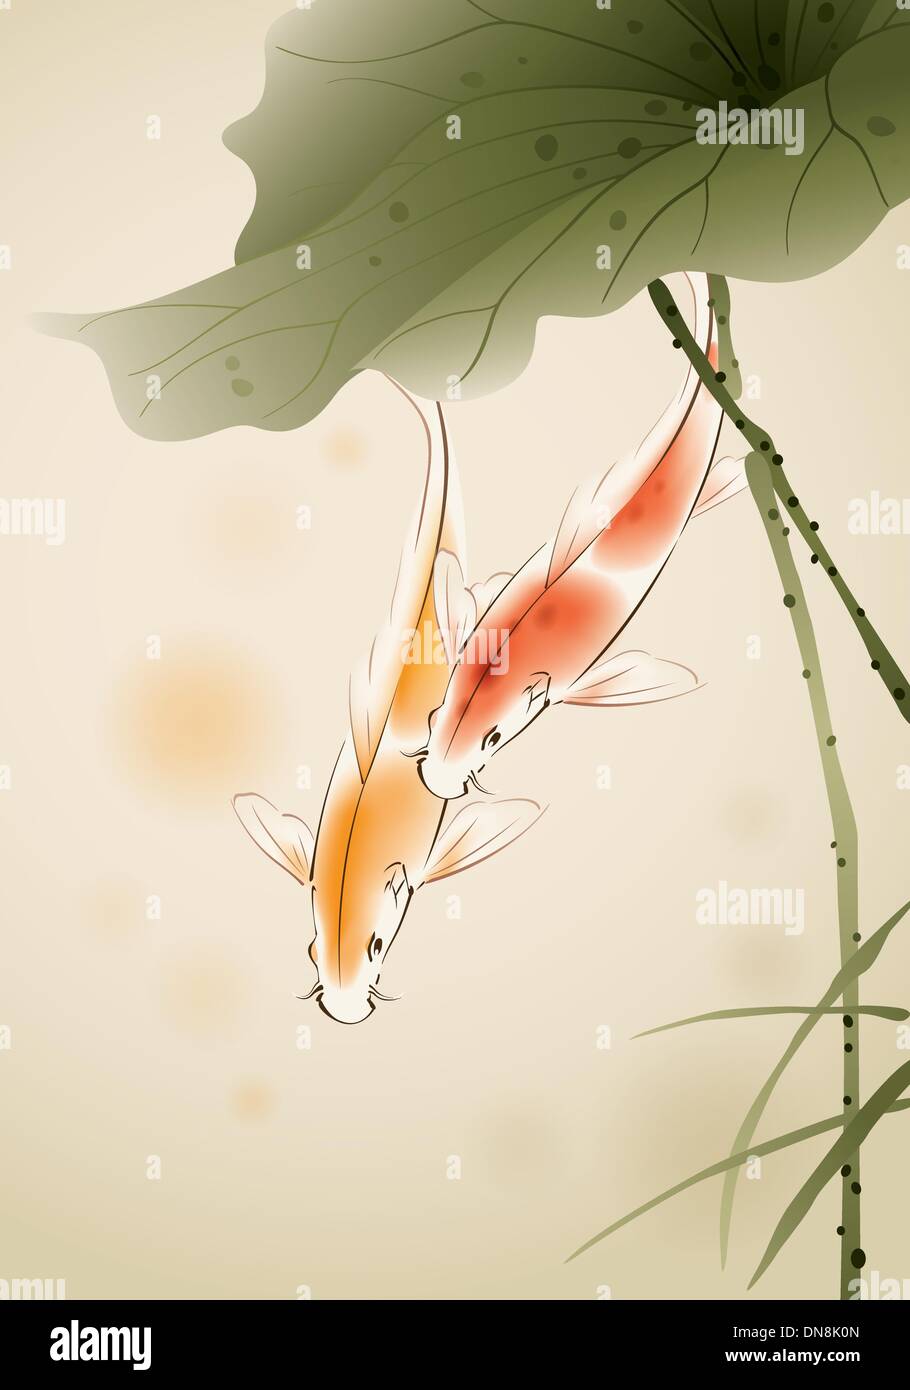 Koi de poissons dans l'étang de lotus Illustration de Vecteur